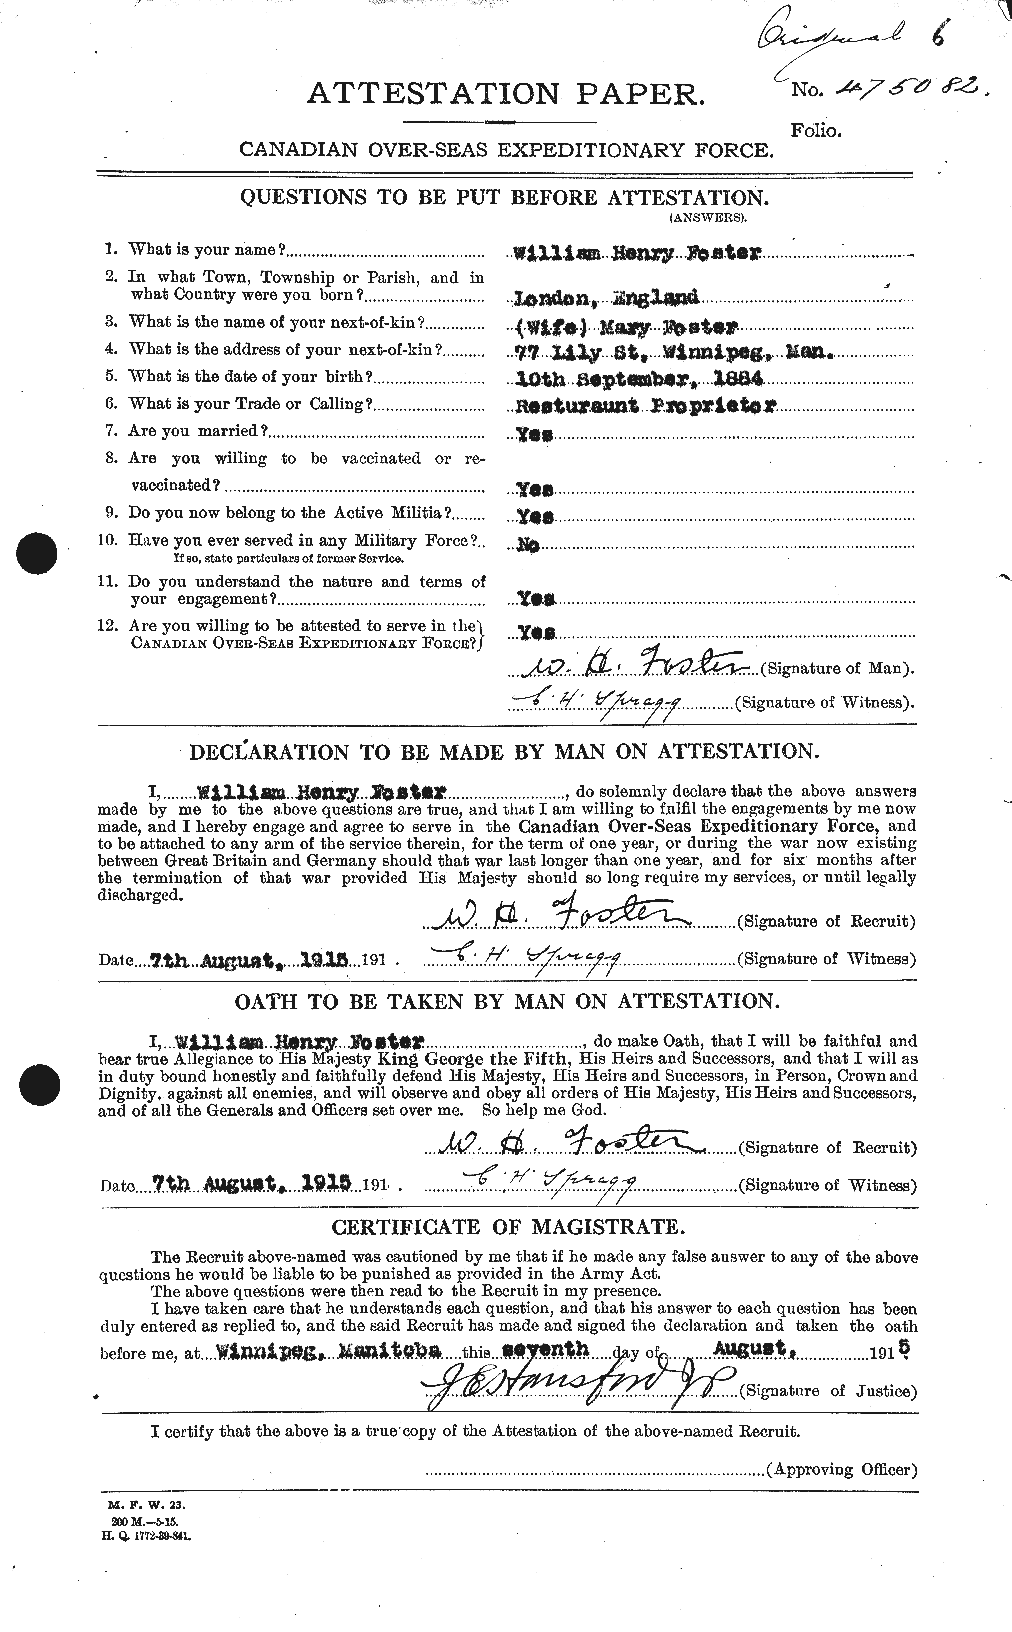 Dossiers du Personnel de la Première Guerre mondiale - CEC 328752a